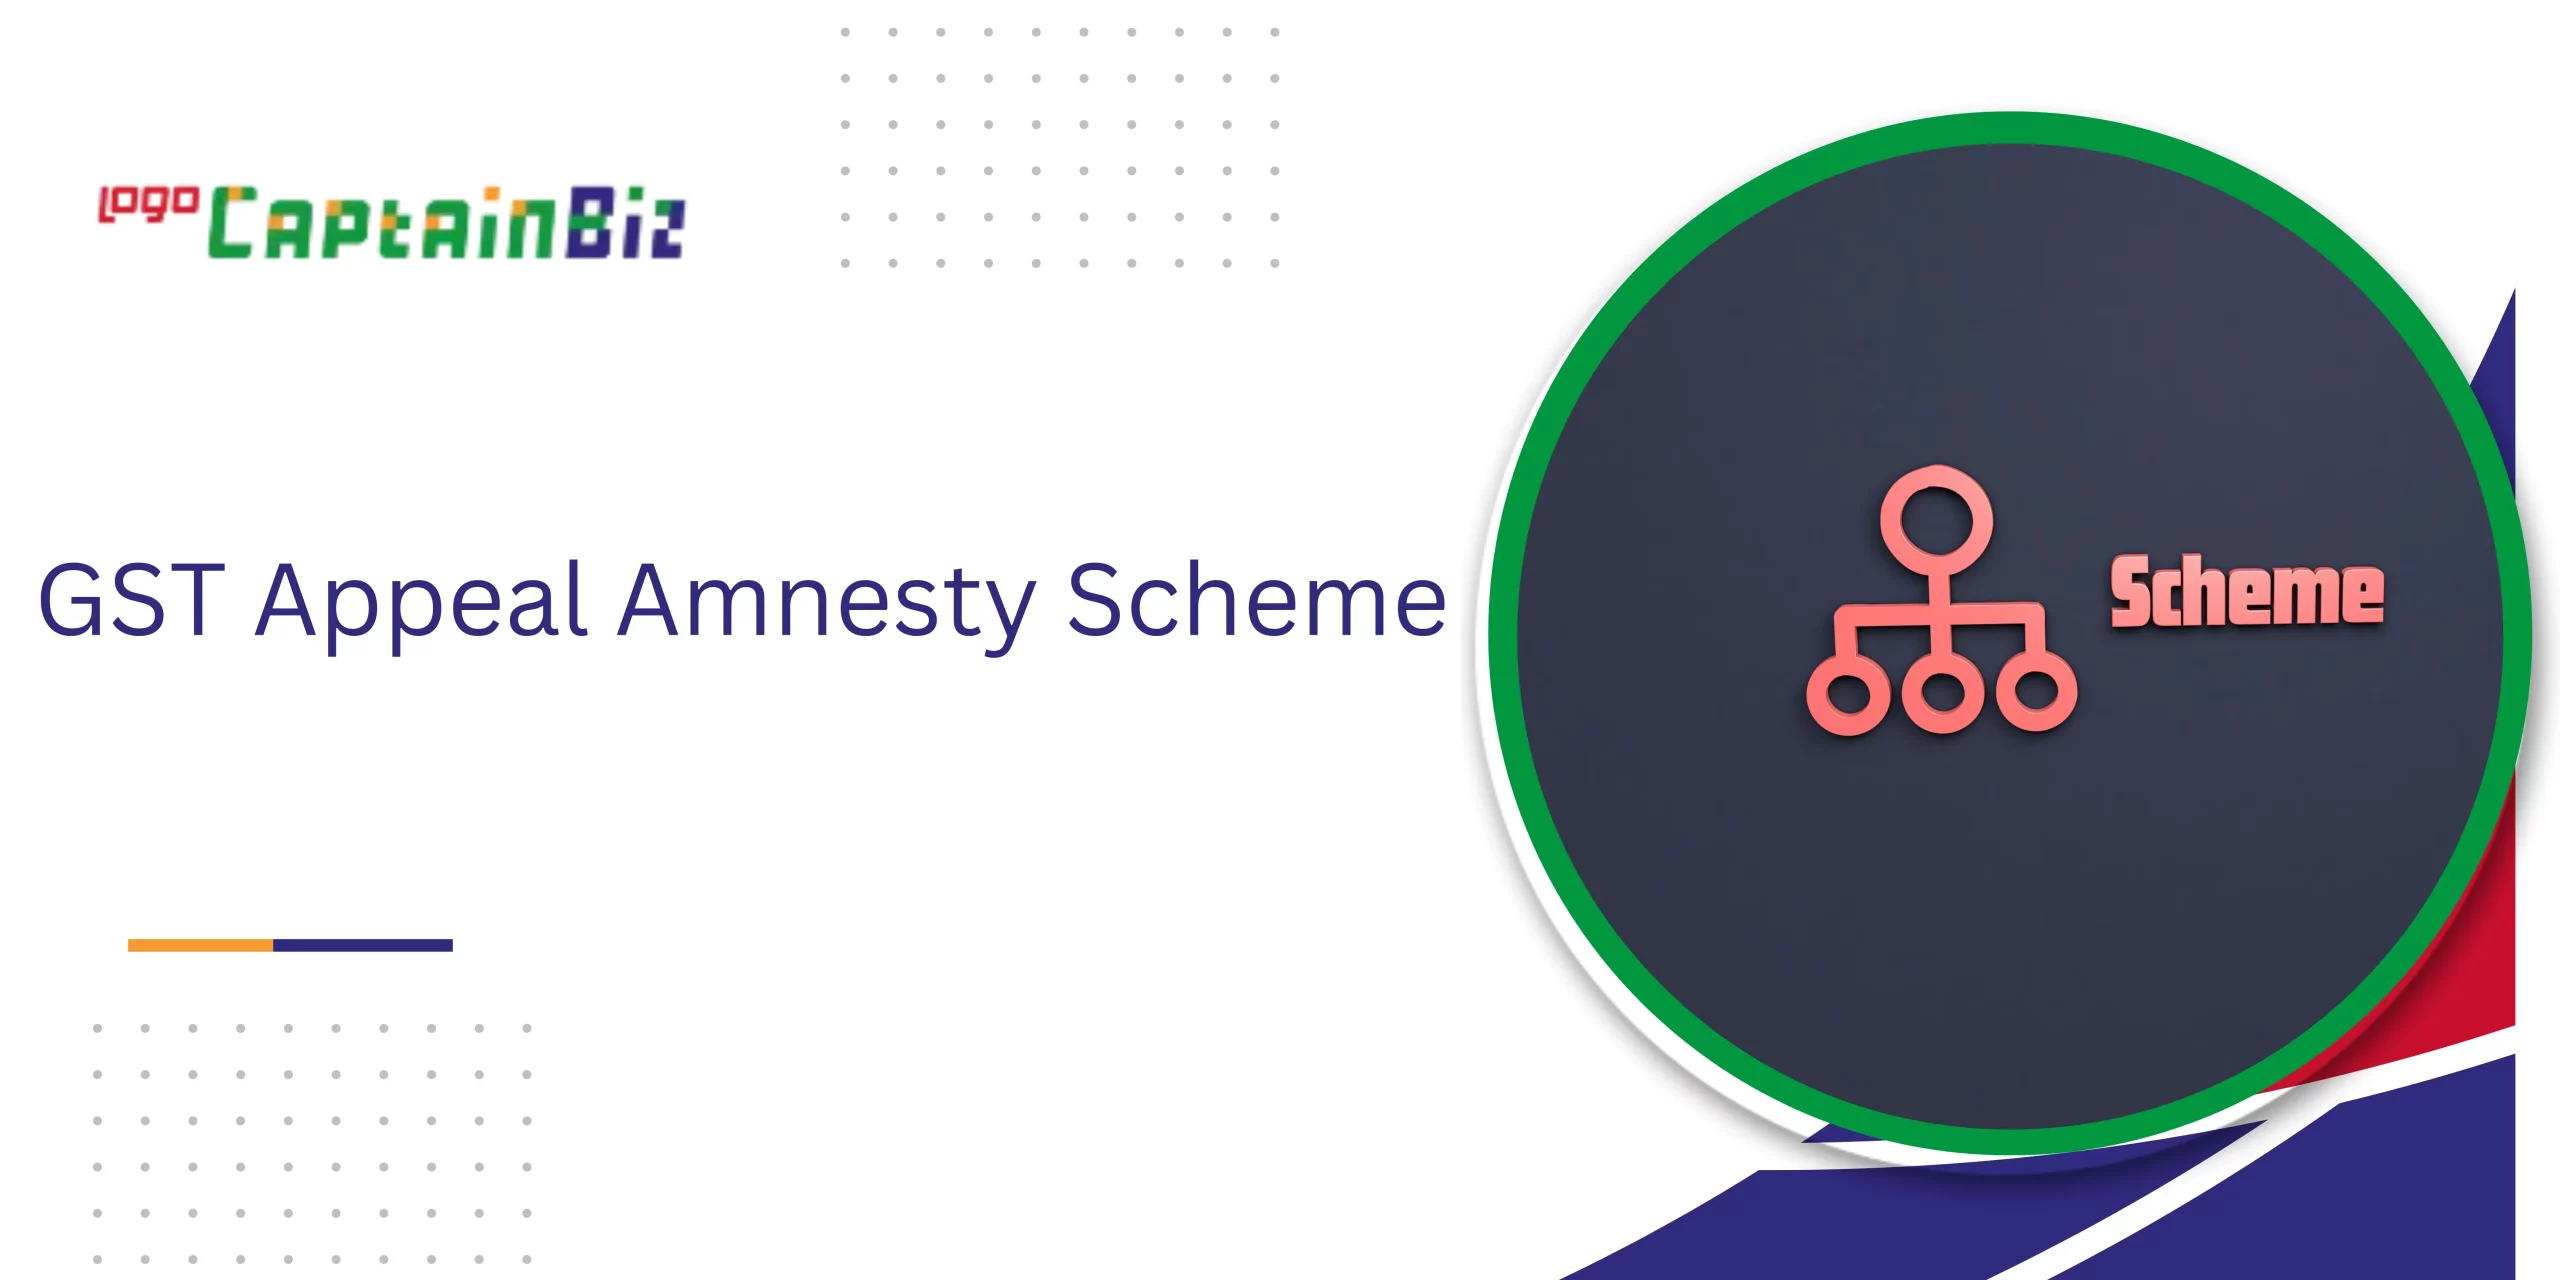 CaptainBiz: GST Appeal Amnesty Scheme